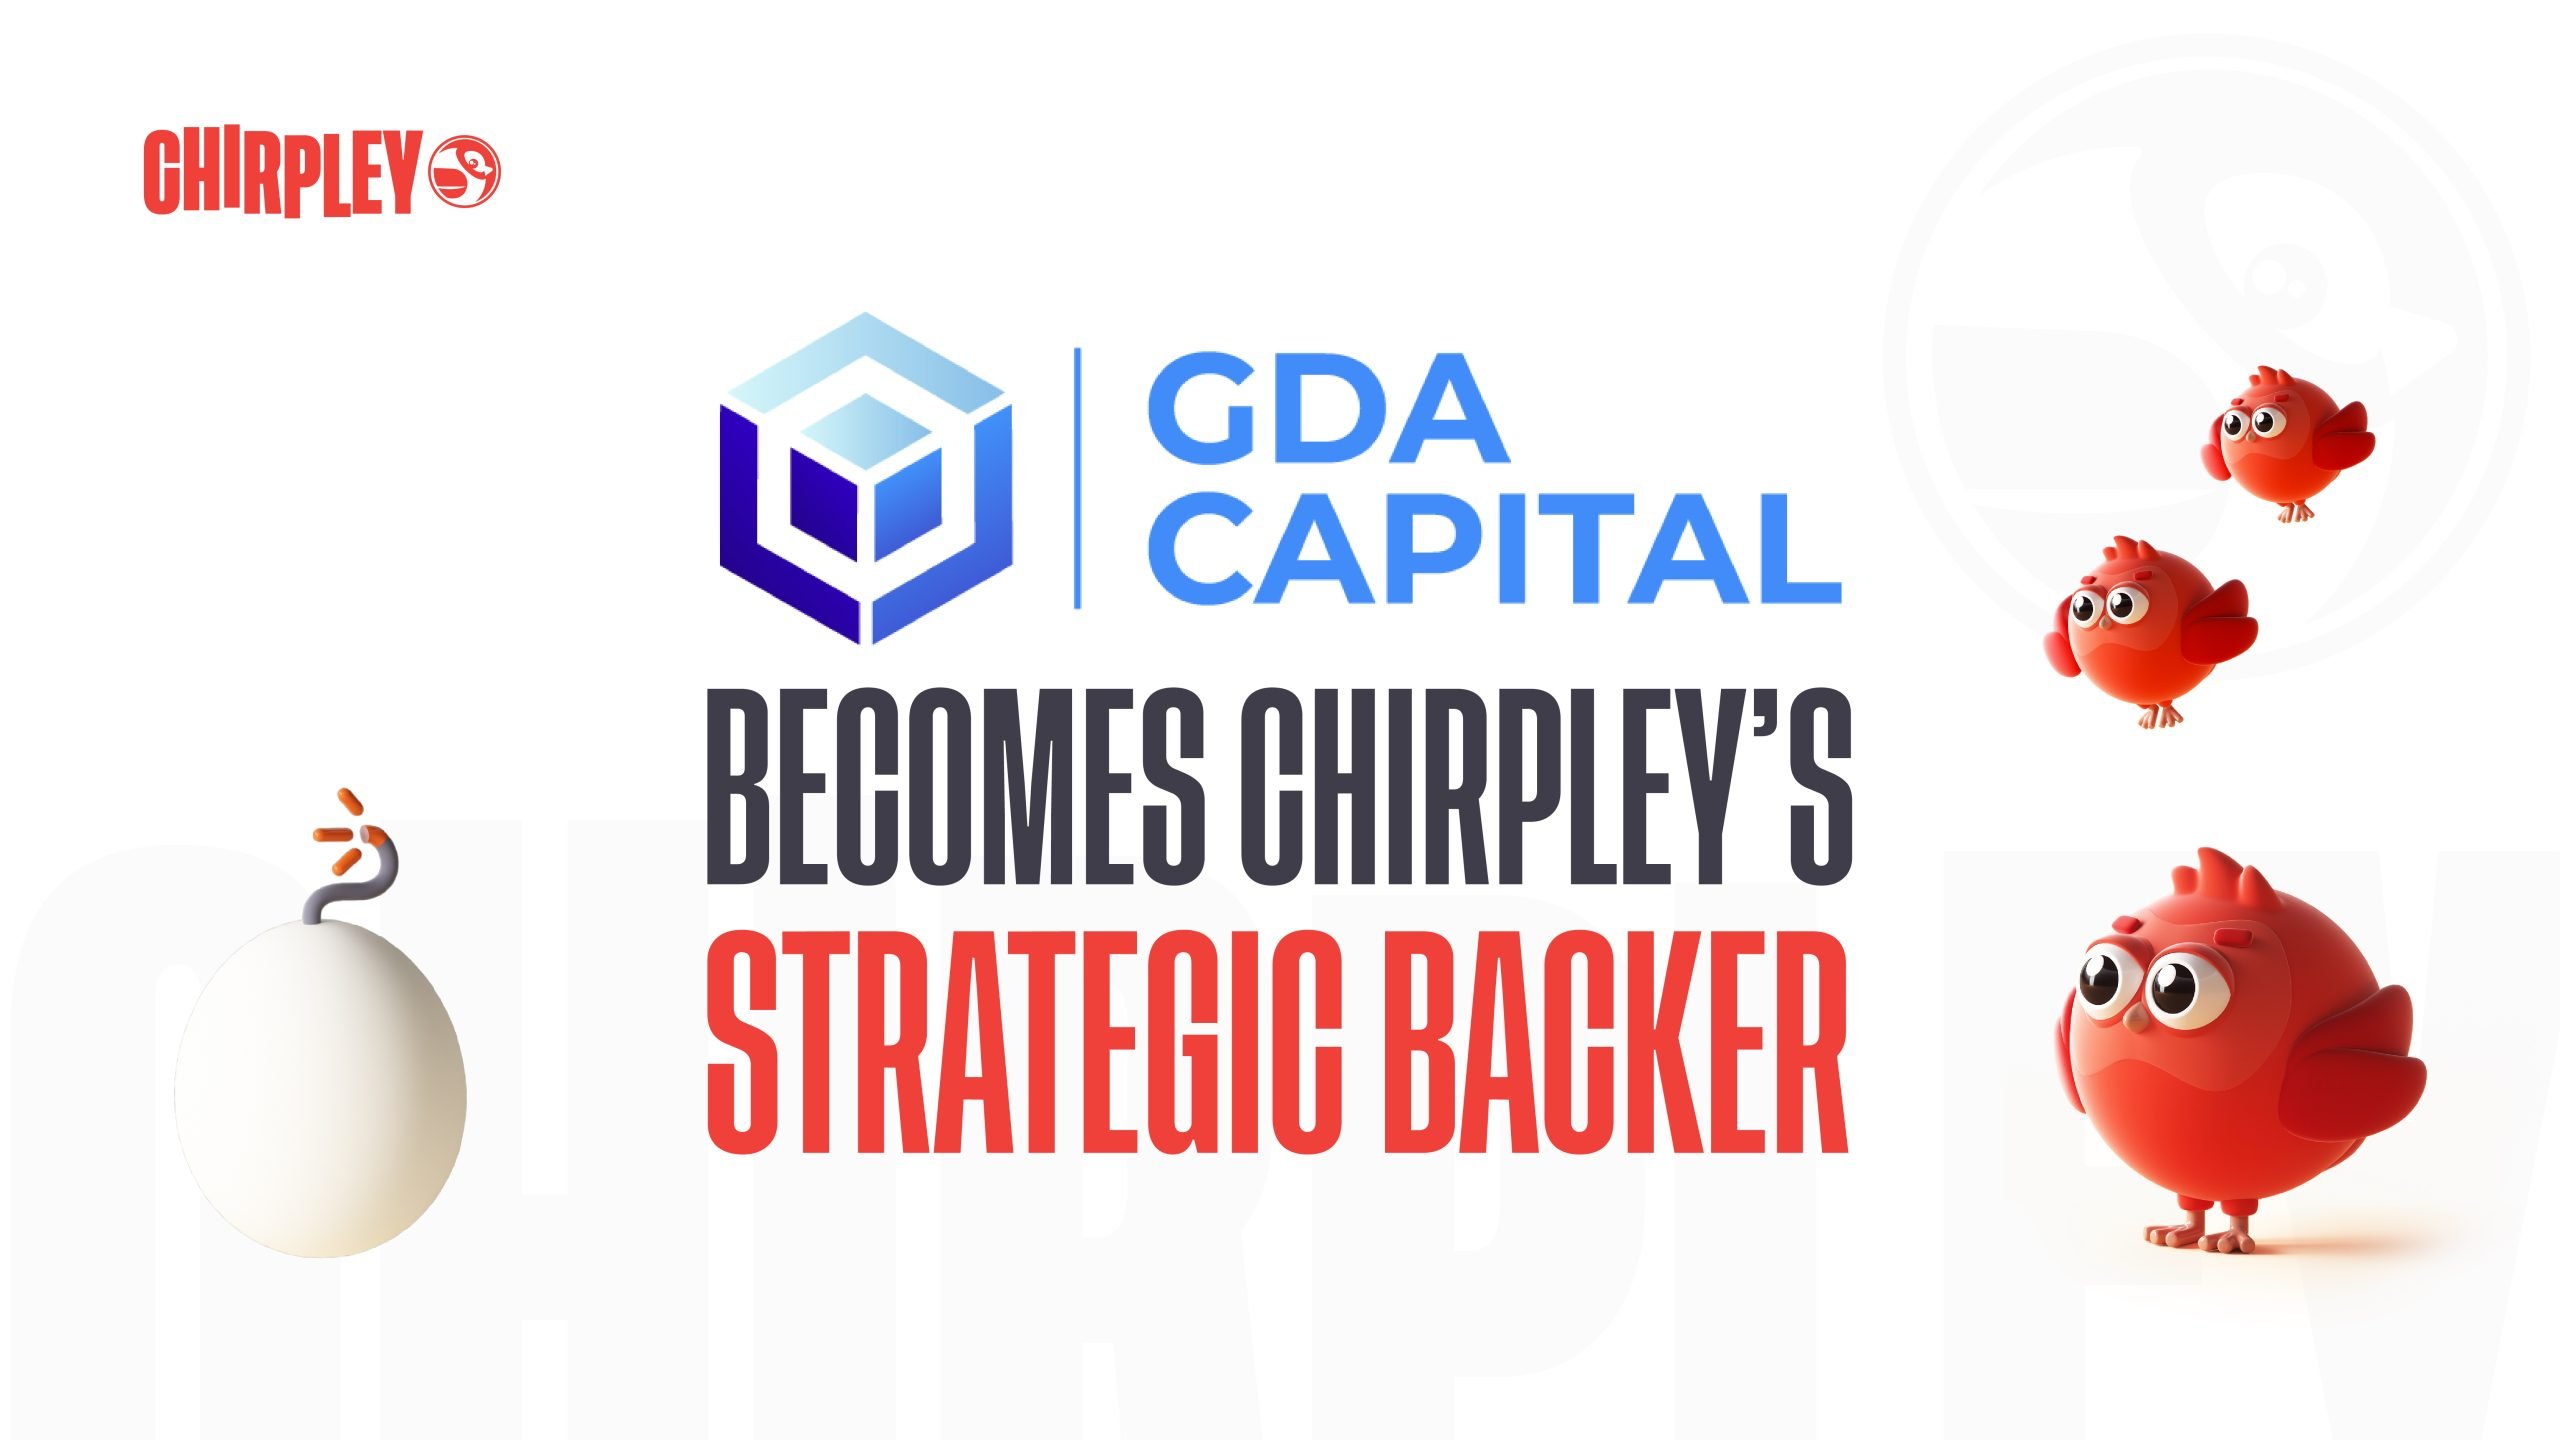 GDA Capital (GDA) s'aventure dans l'avenir du marketing d'influence et soutient Chirpley en tant que partenaire clé en capital-risque avec un soutien à la distribution internationale – Communiqué de presse Bitcoin News